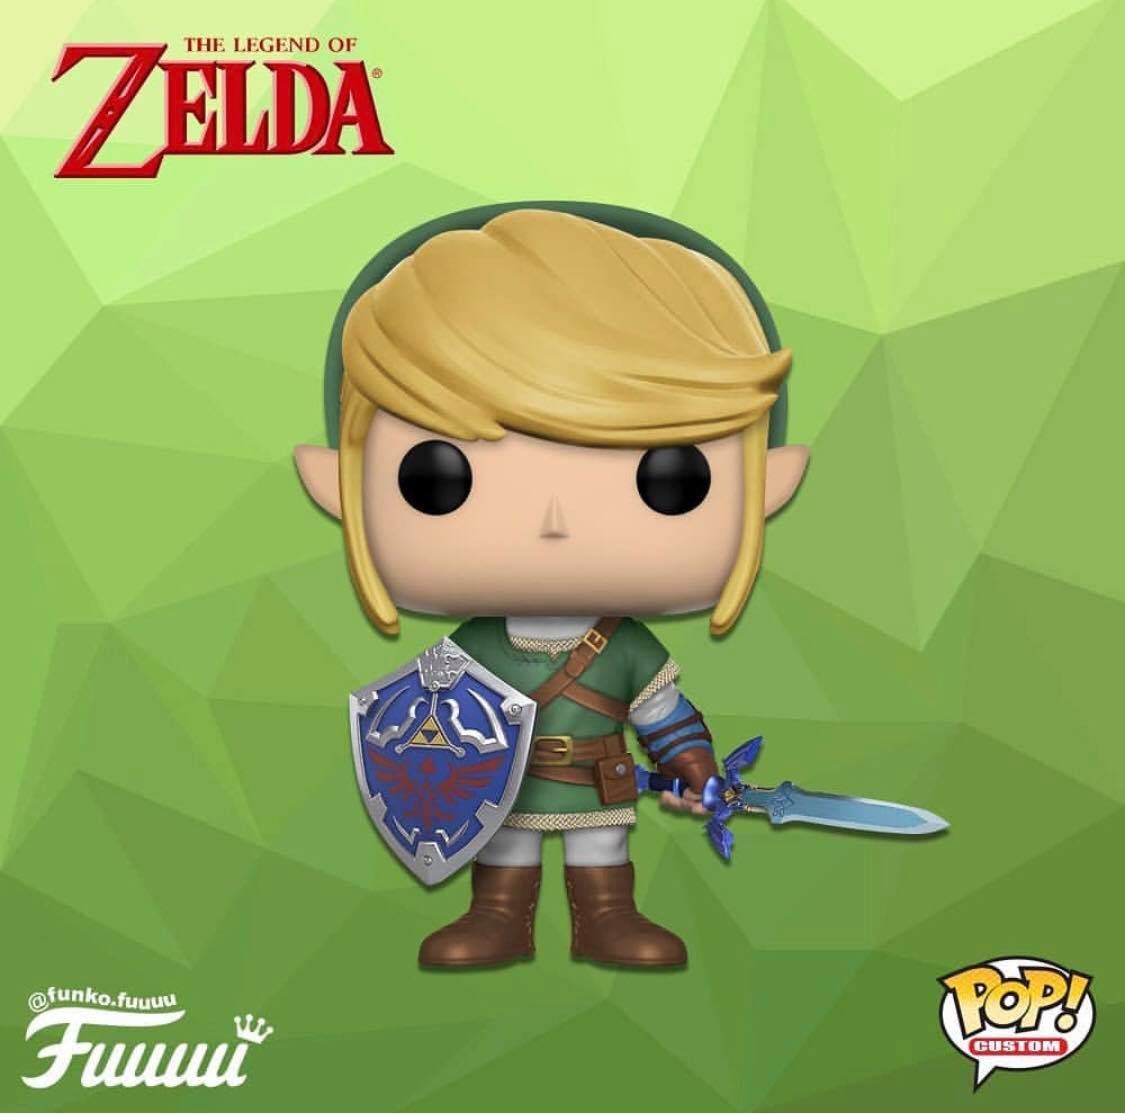 Funko Pop! The Legend of Zelda